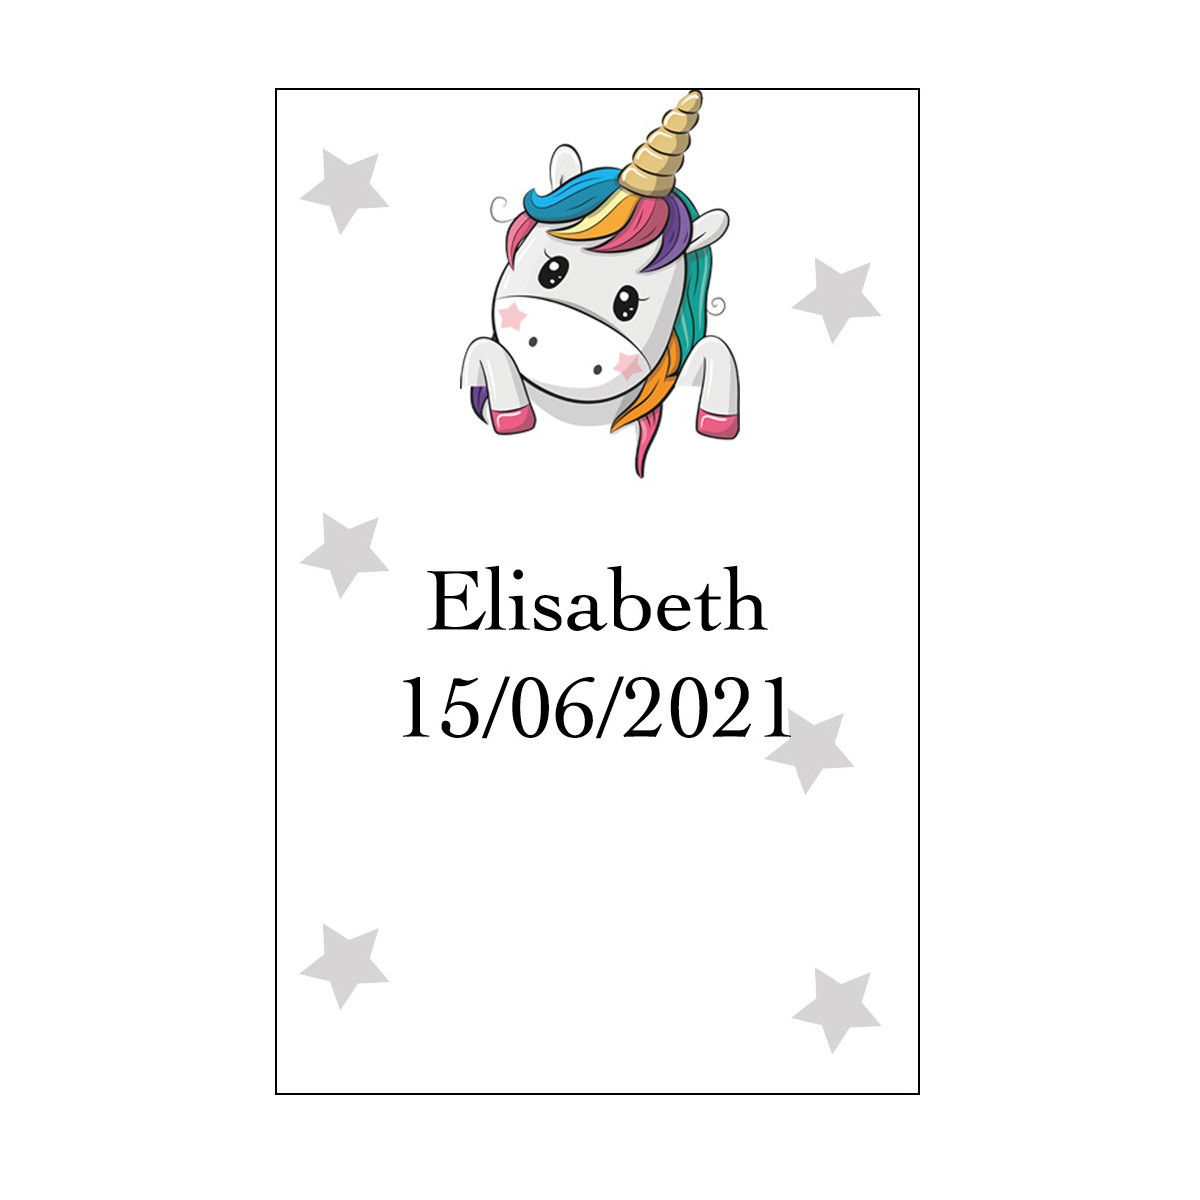 Adhesivo unicornio corazones grande personalizado con nombre y fecha para bodas bautizos comuniones cumpleaños y empresas